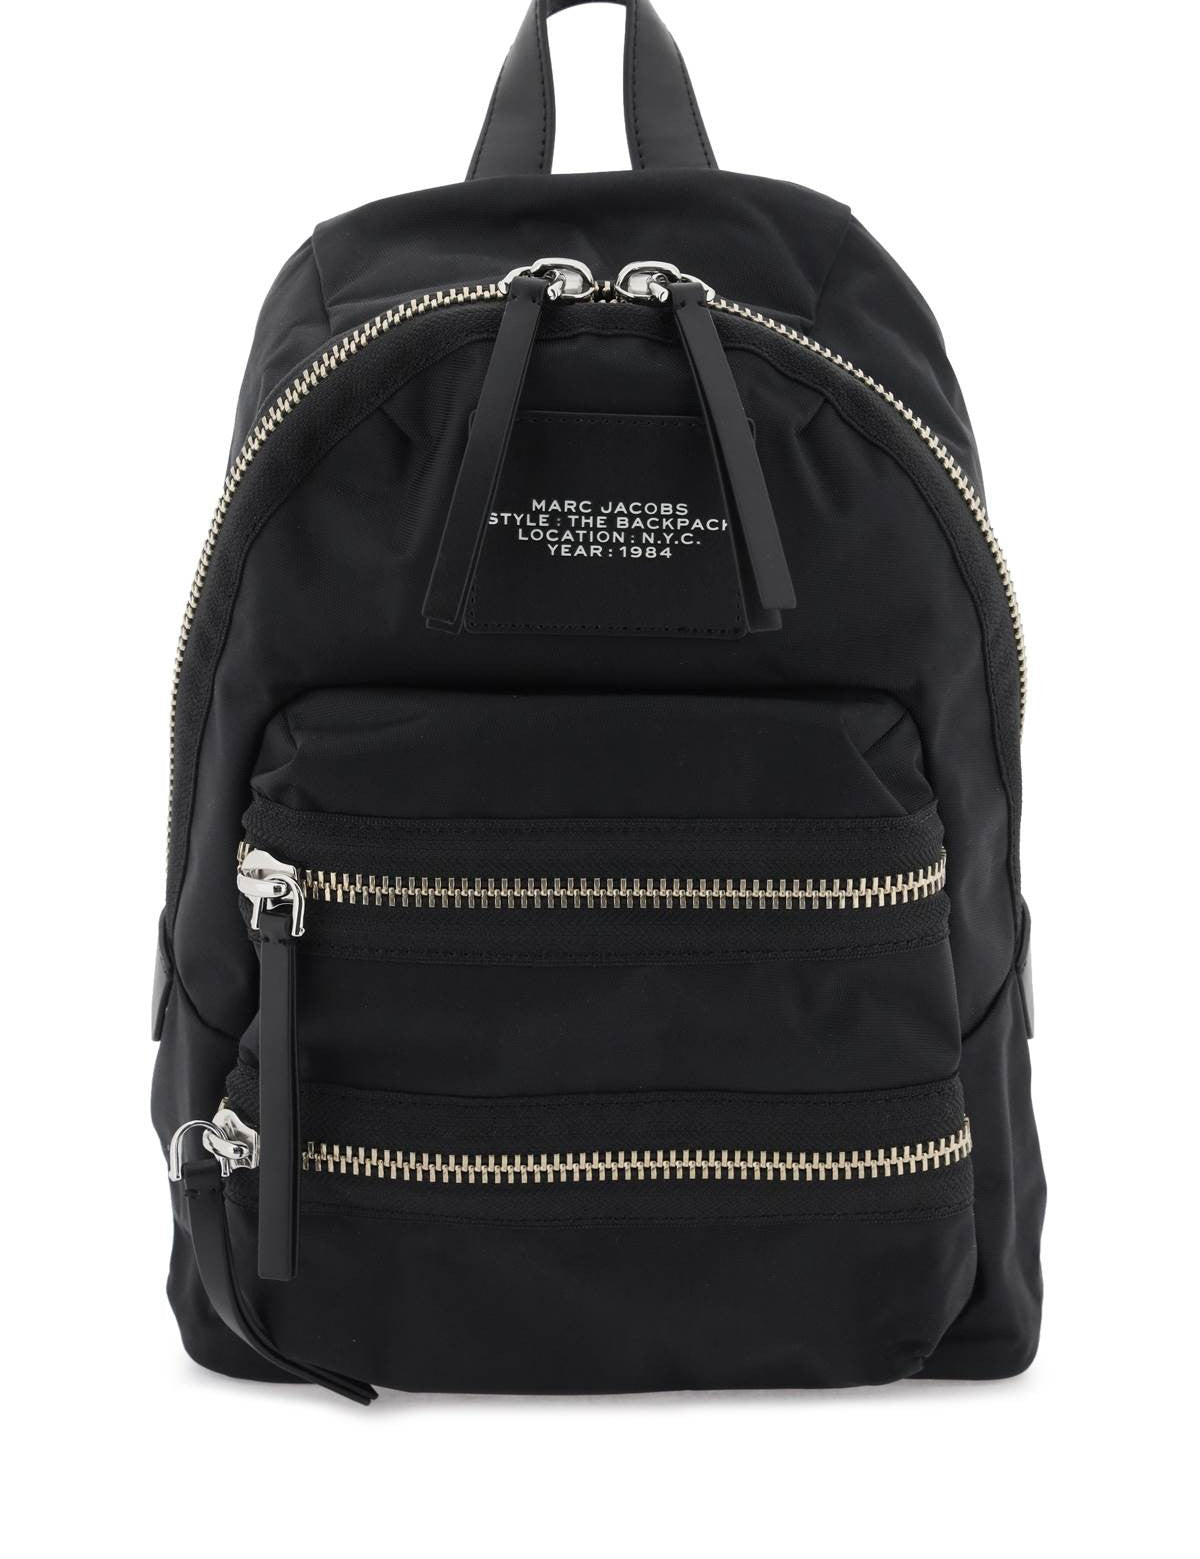 the-biker-nylon-medium-backpack.jpg